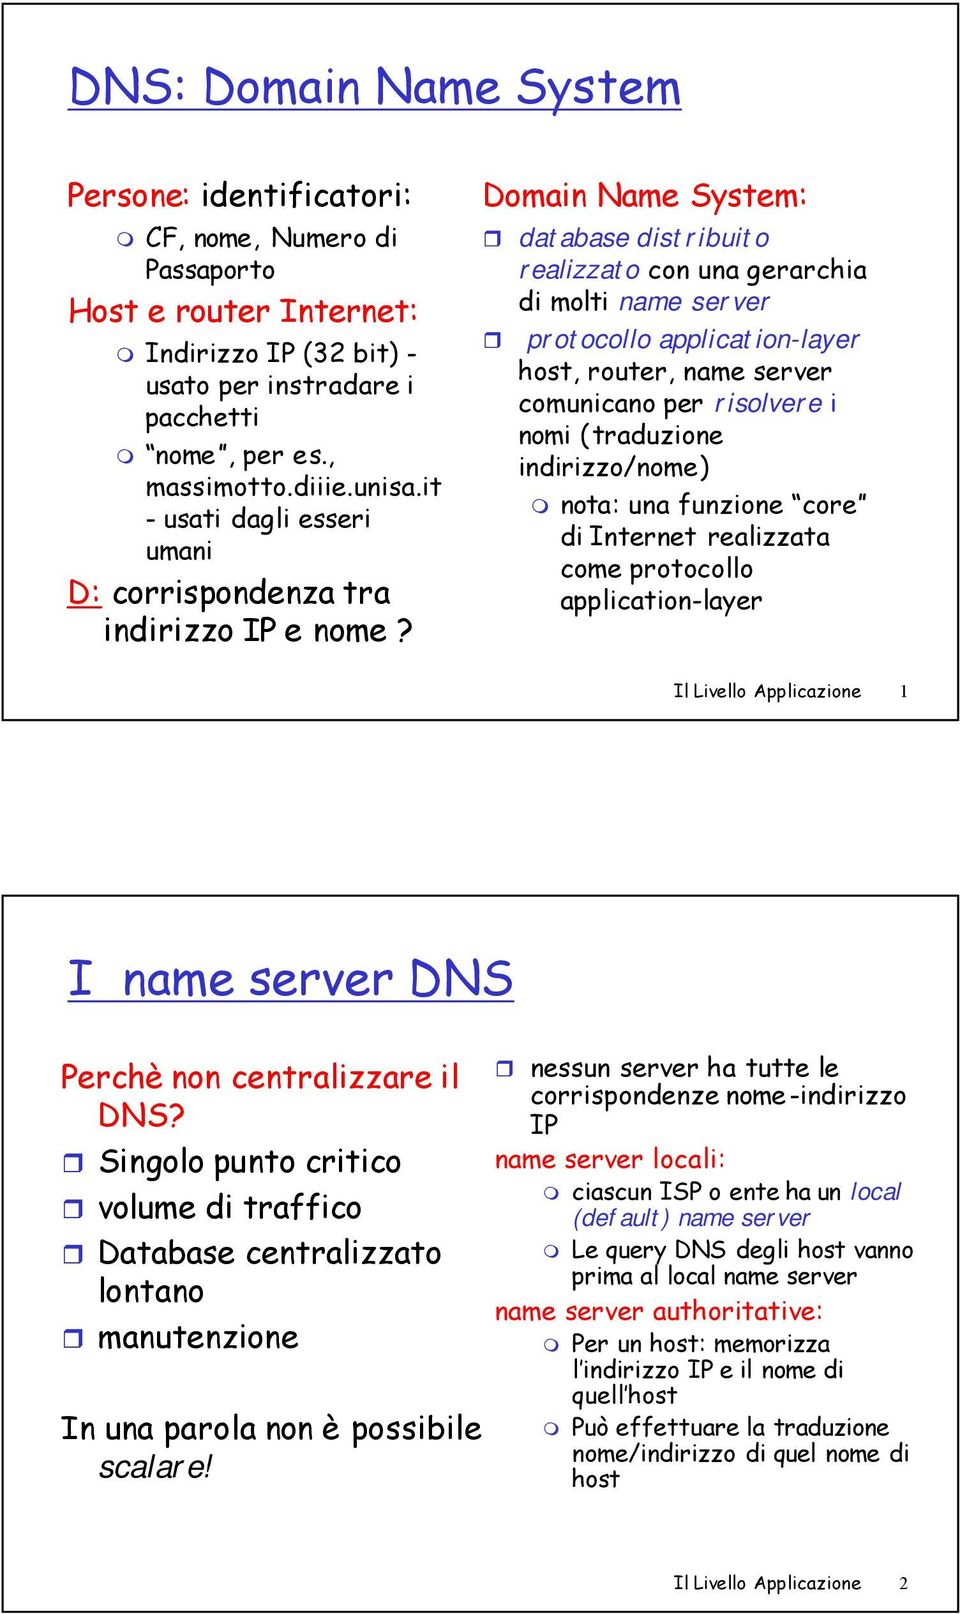 Domain Name System: database distribuito realizzato con una gerarchia di molti name server protocollo application-layer host, router, name server comunicano per risolvere i nomi (traduzione